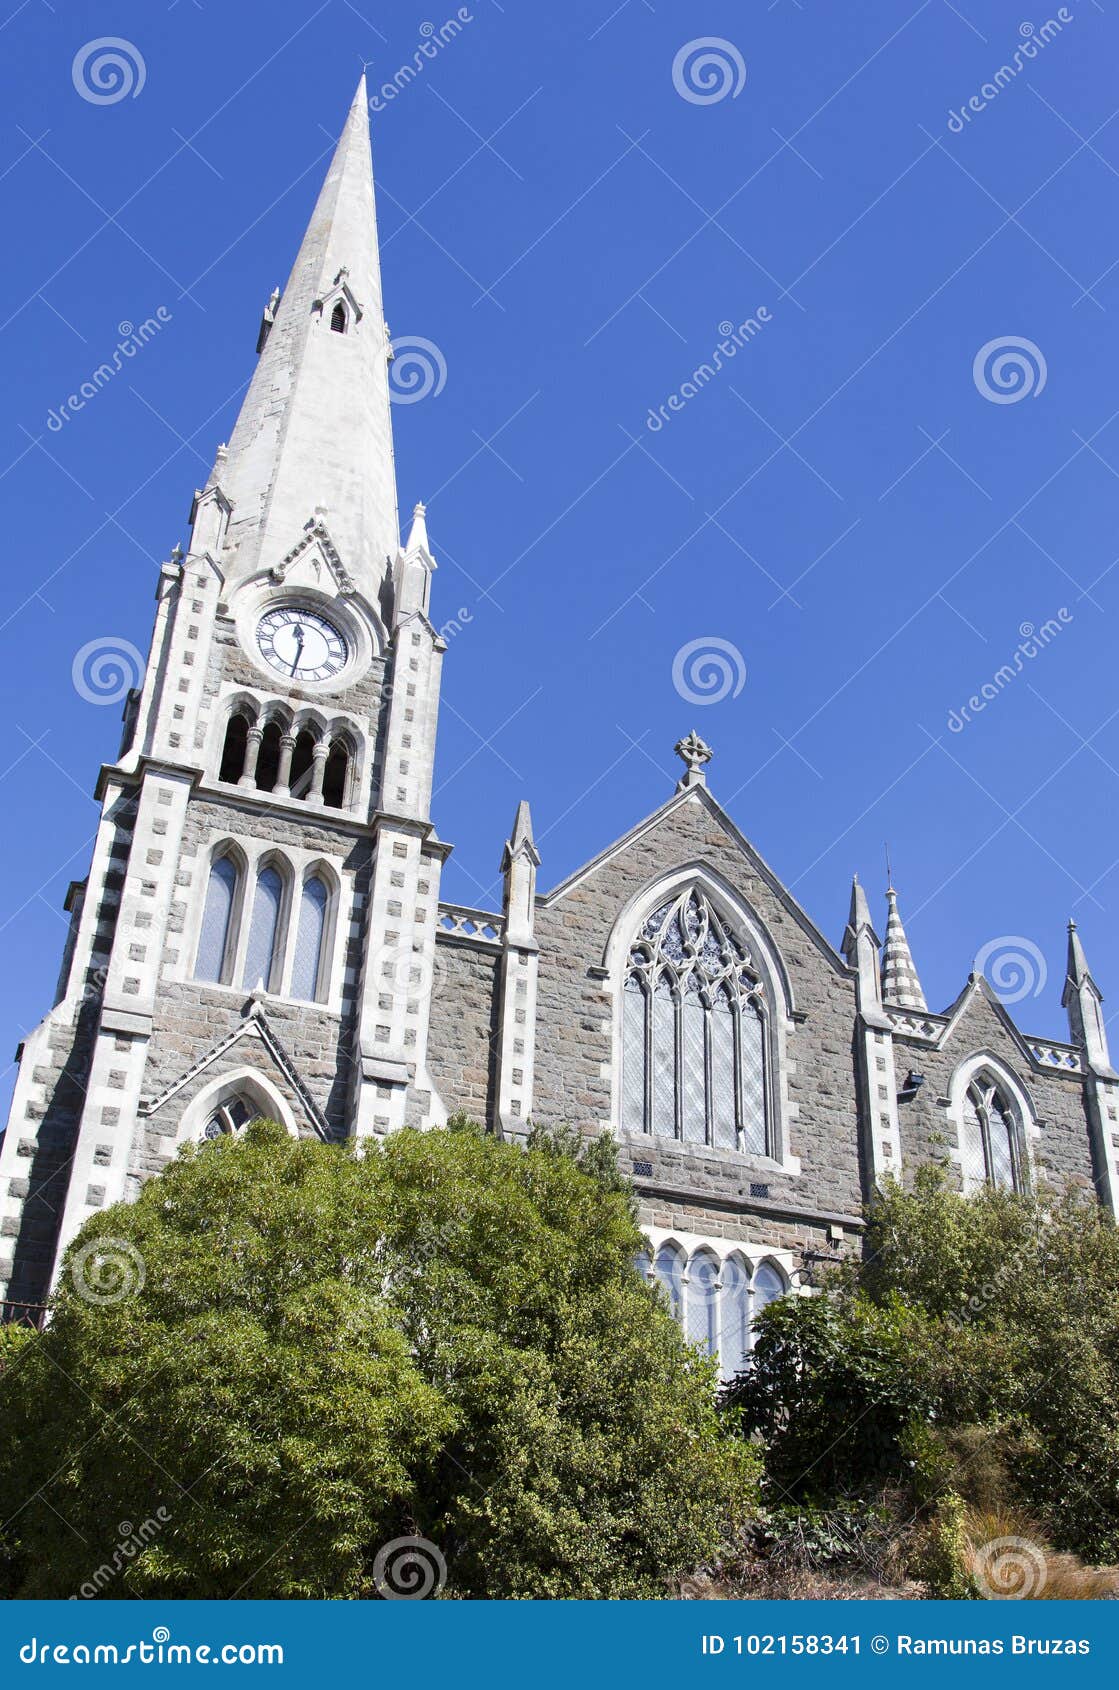 Πρεσβυτερική Εκκλησία της Νέας Ζηλανδίας ` s. Πρεσβυτερική Εκκλησία της Iona που στέκεται σε έναν λόφο στο λιμένα Chalmers, το προάστιο Dunedin Νέα Ζηλανδία